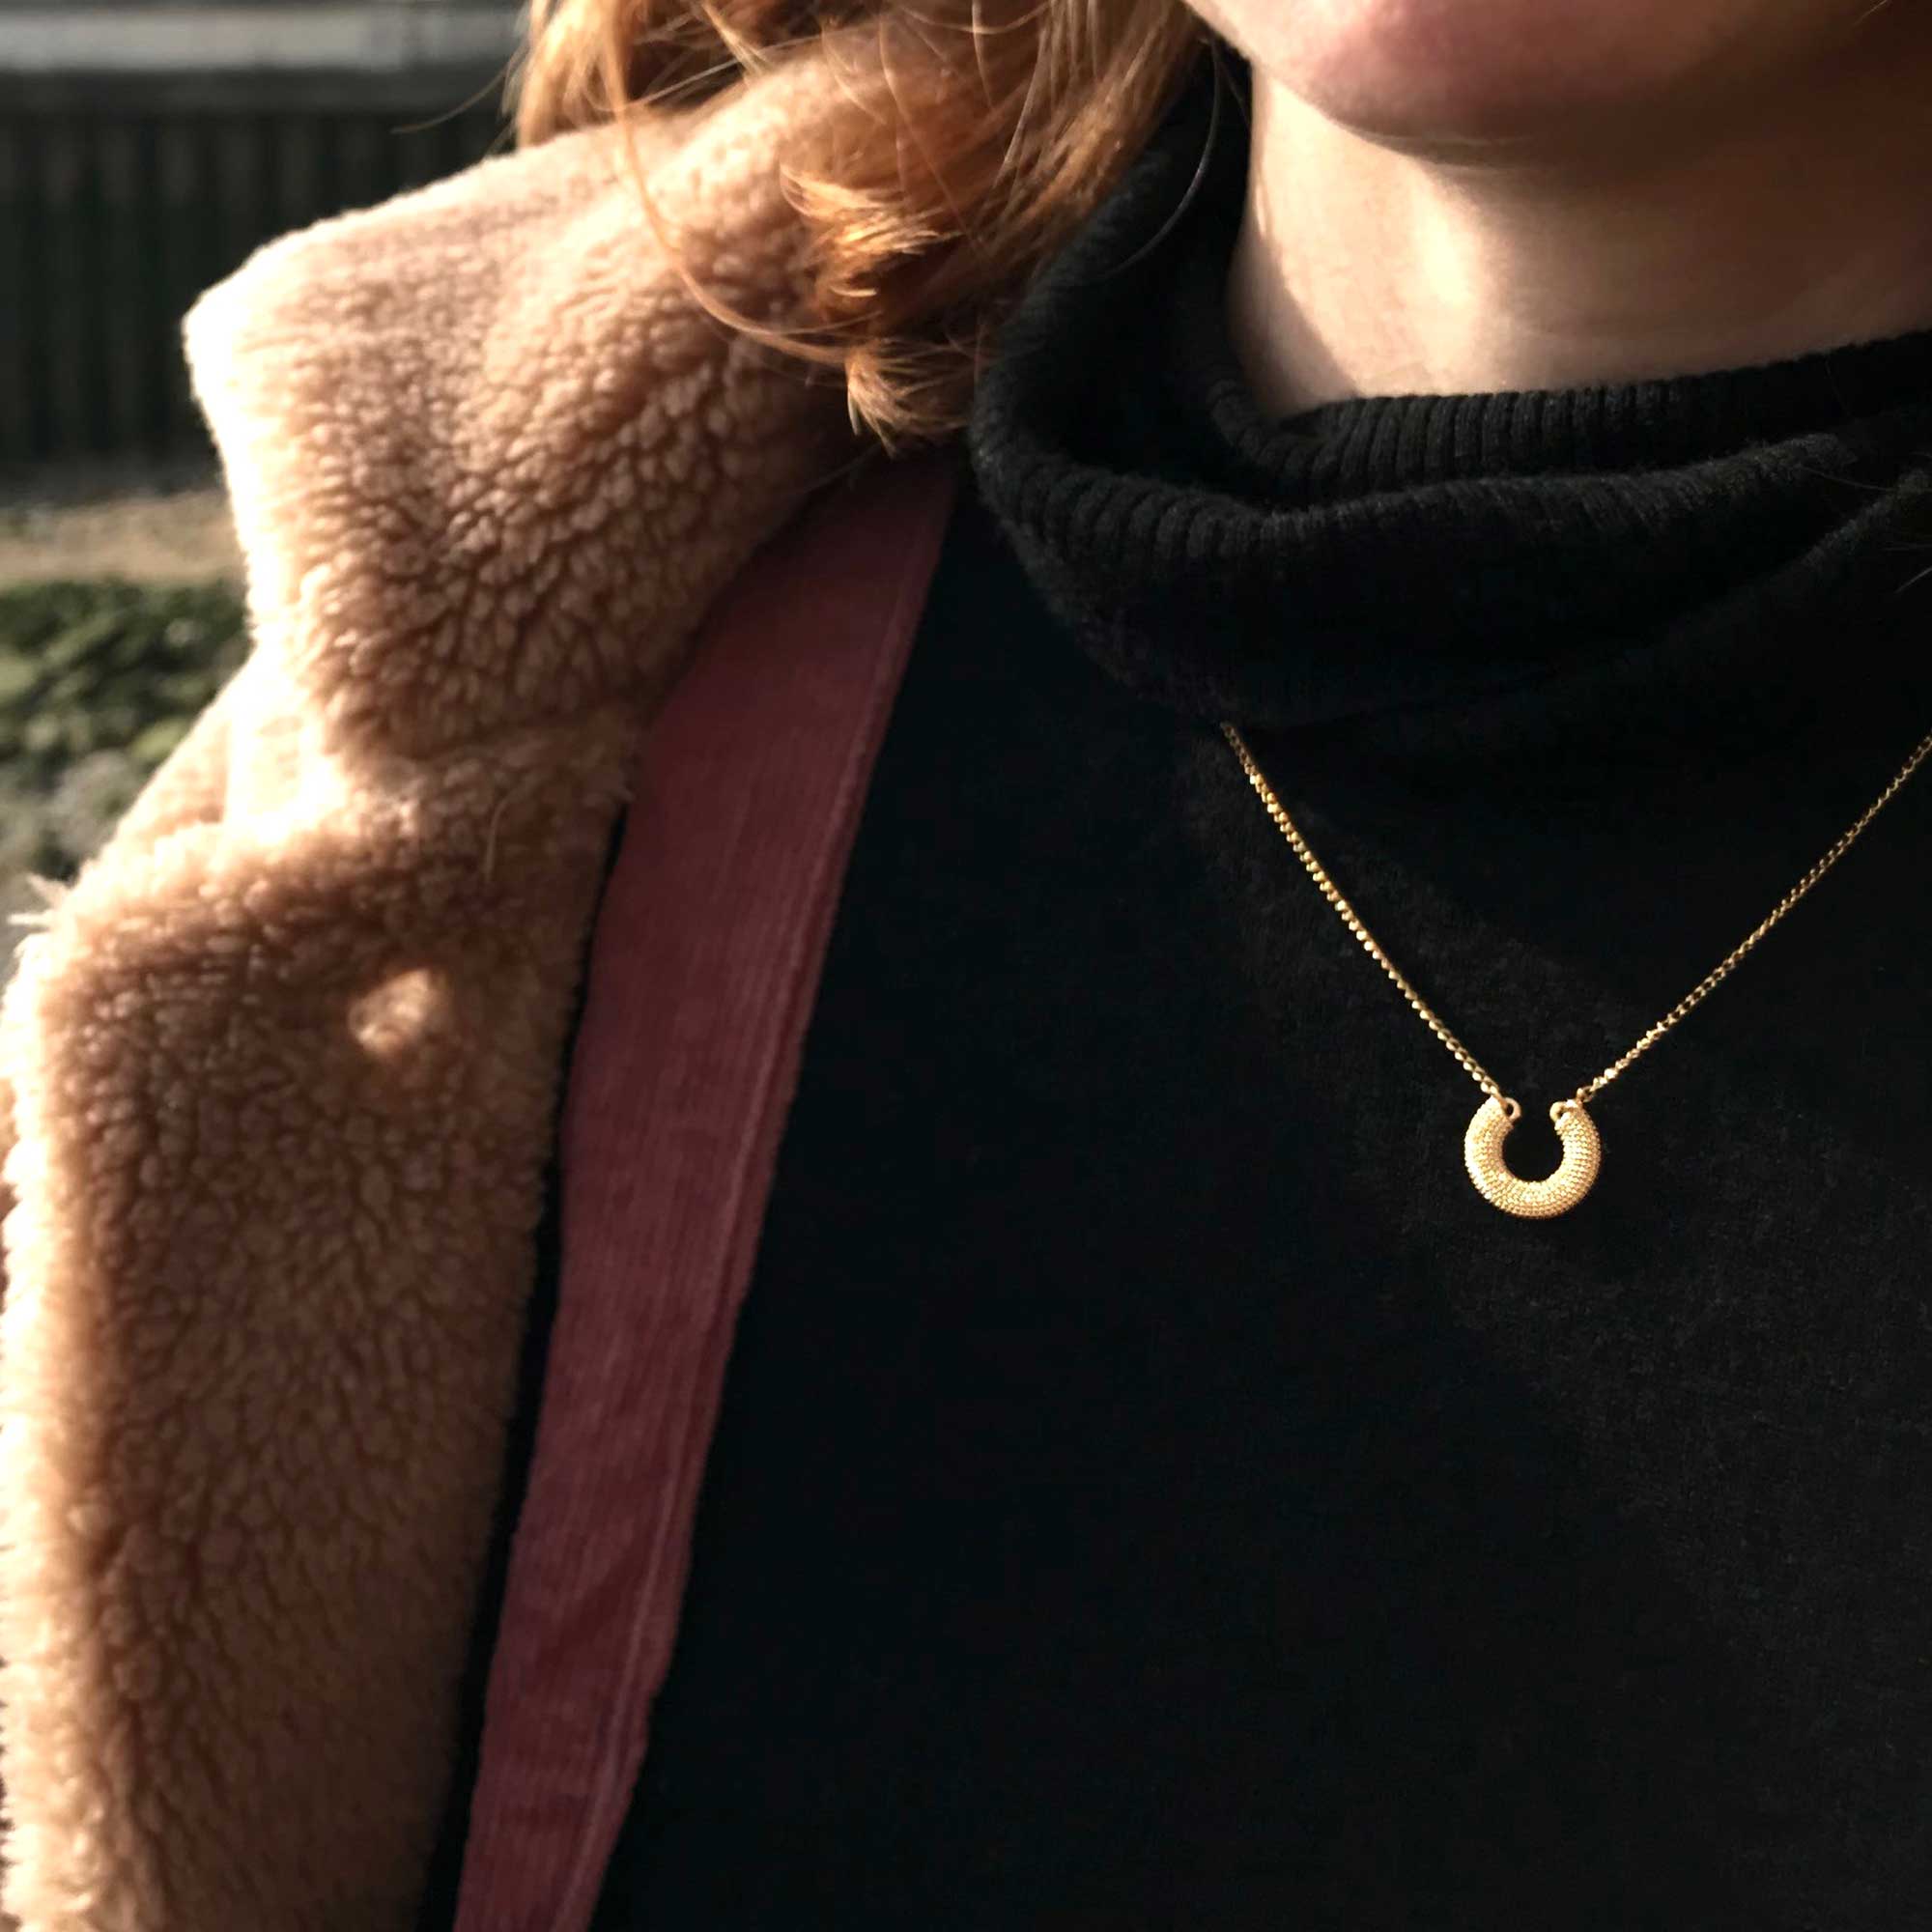 Gold textured horseshoe necklace on model